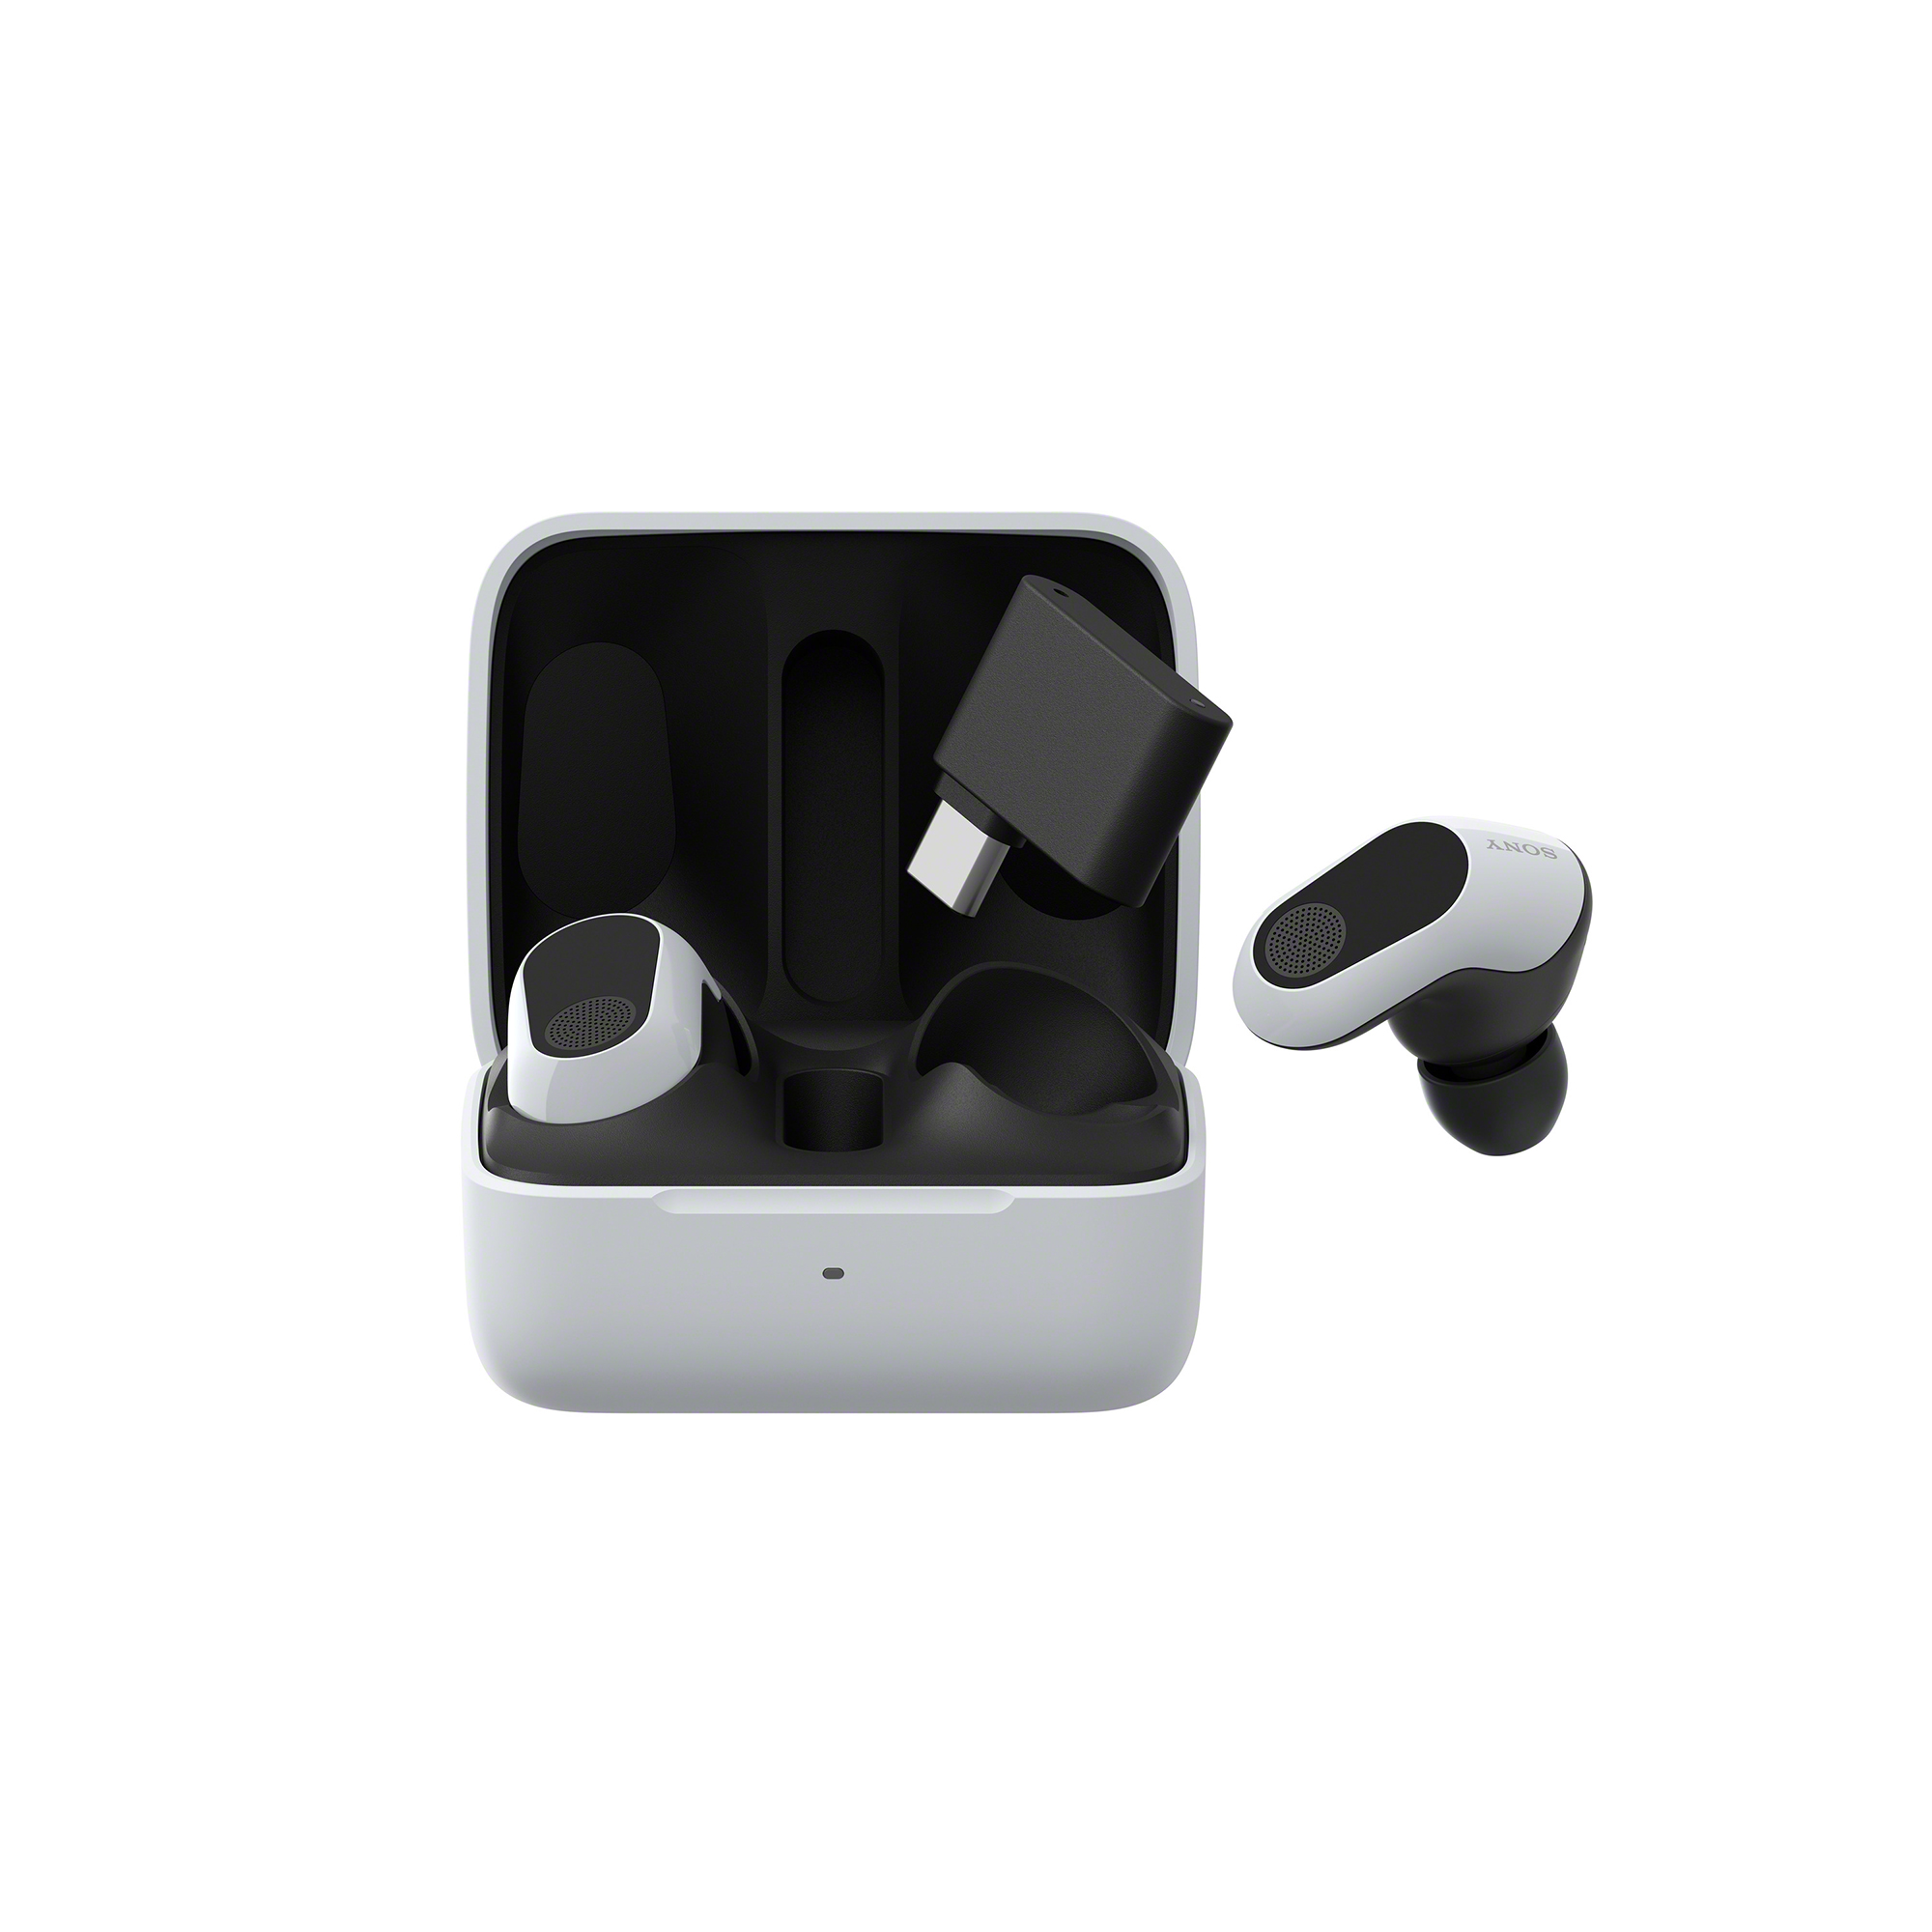 打開的白色 INZONE Buds 耳機充電盒圖片，一個耳機和收發器漂浮在盒子上方